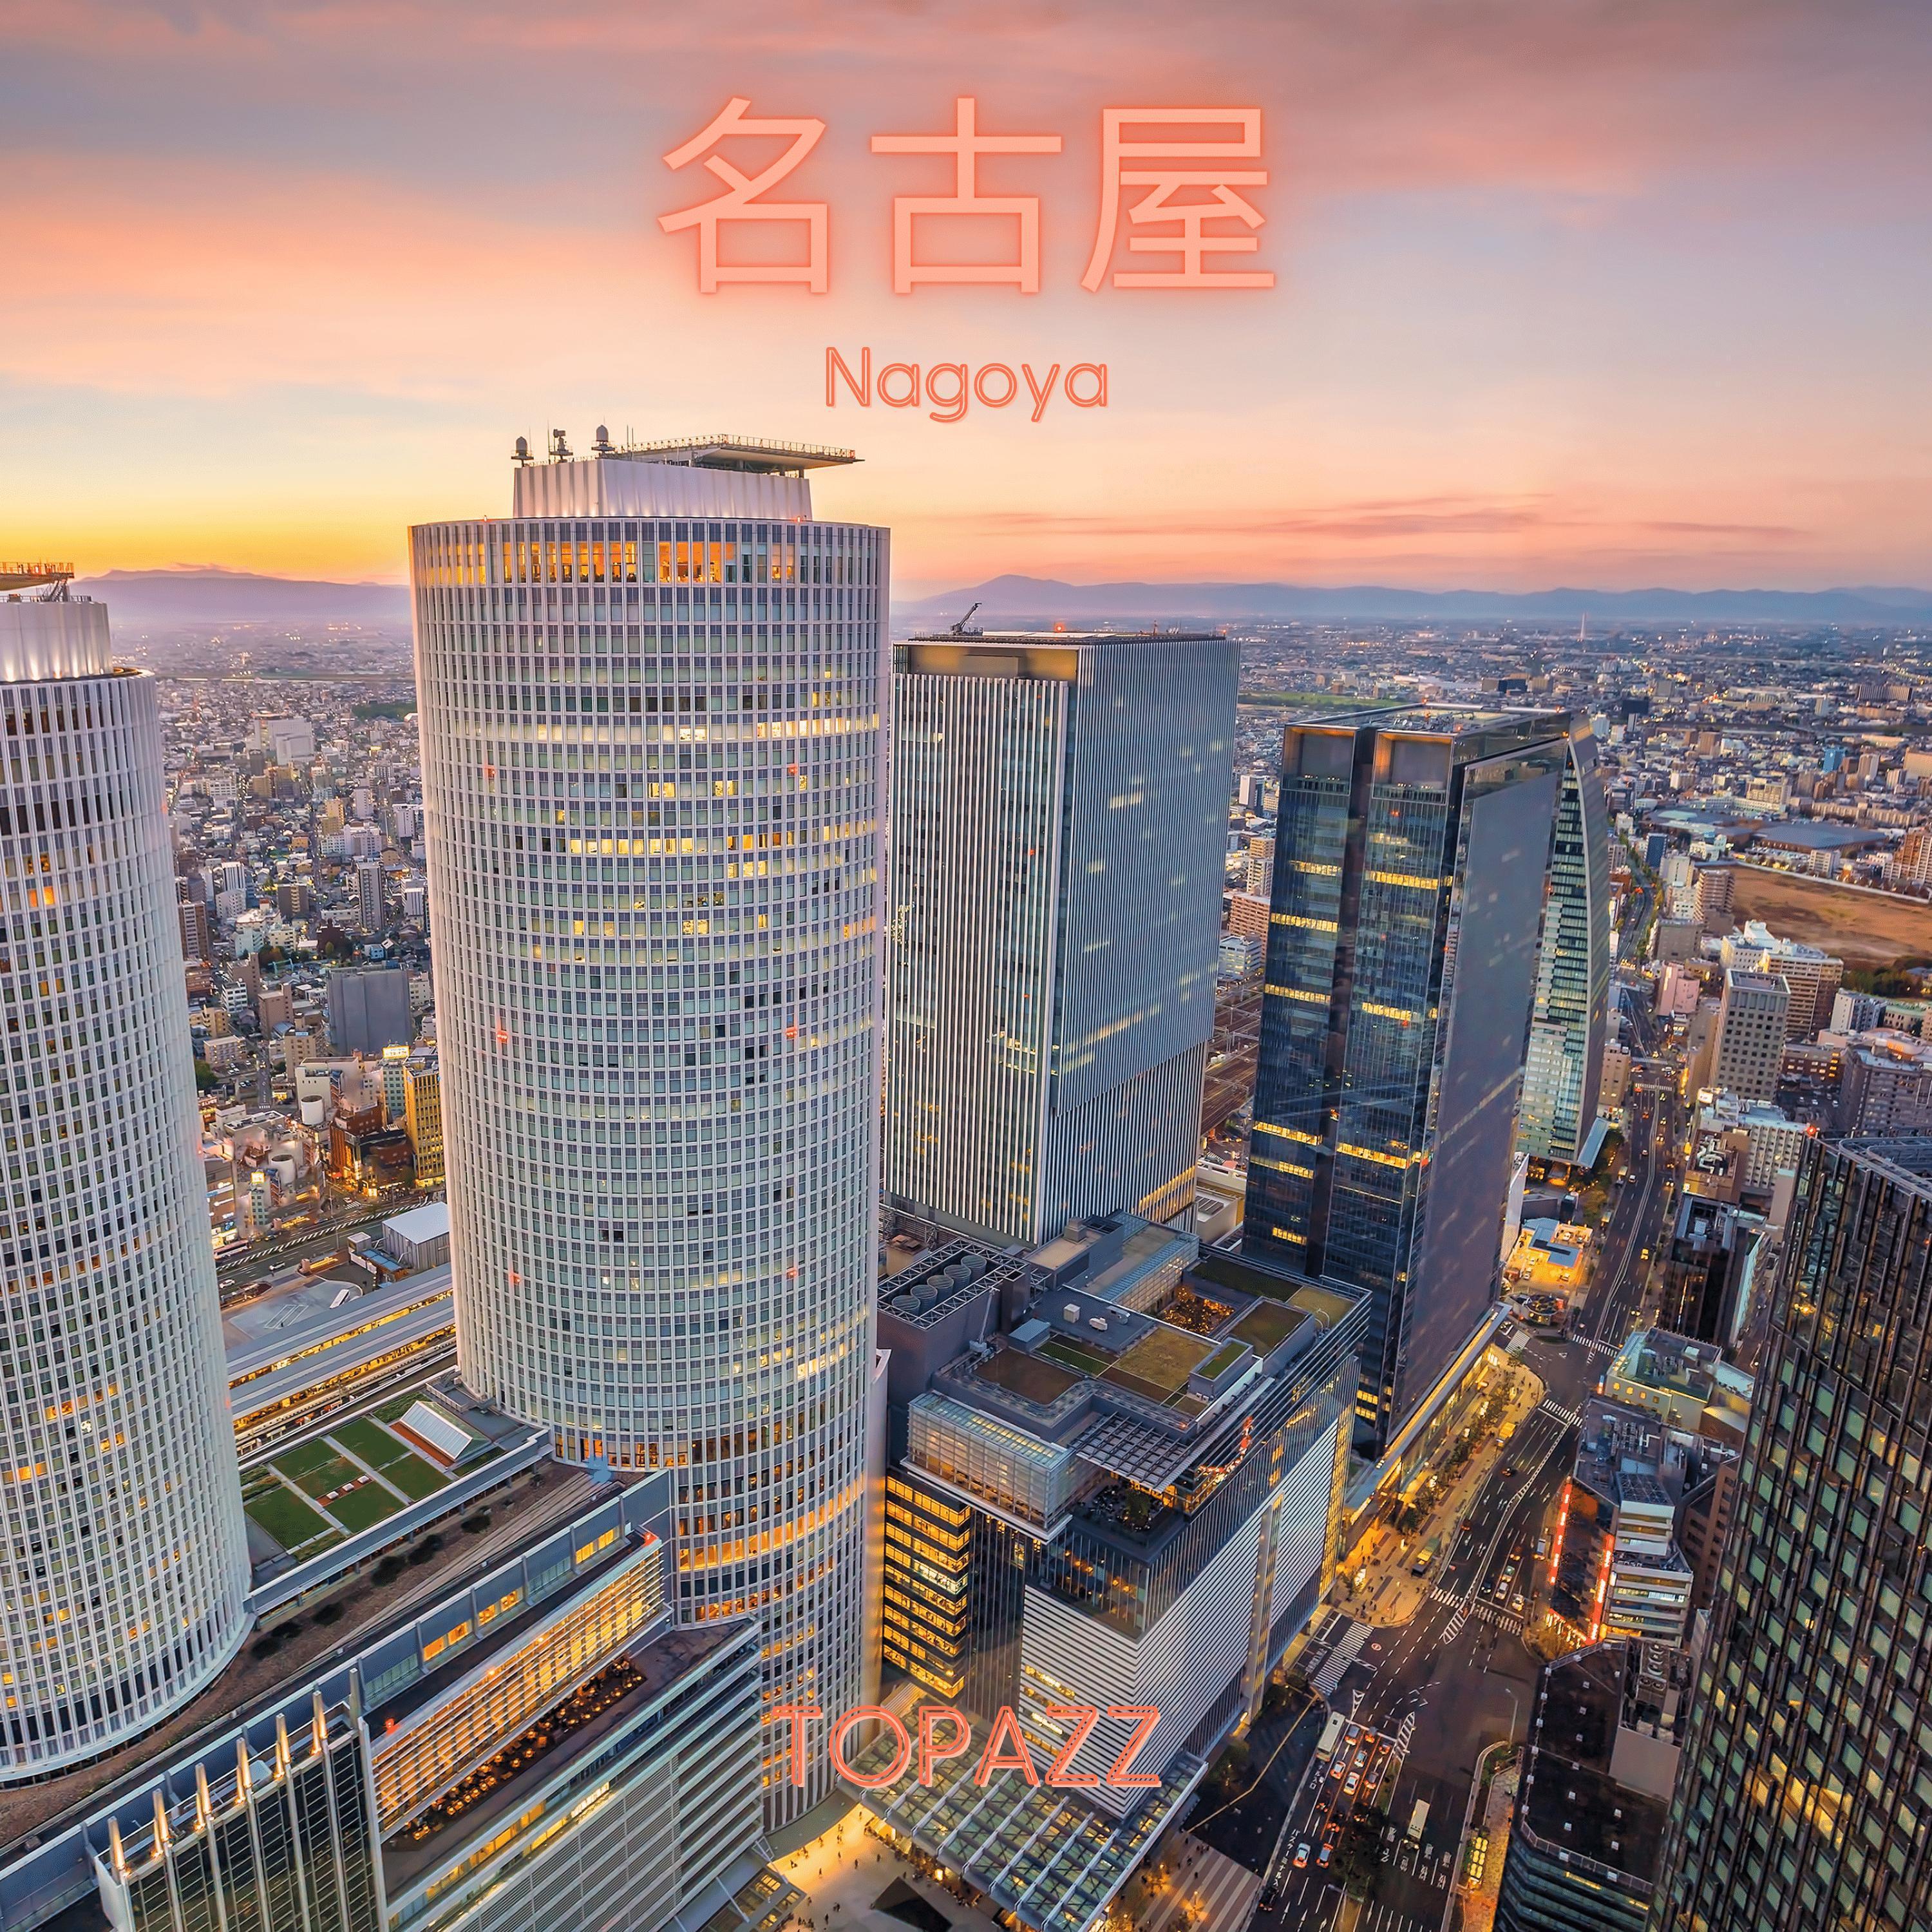 Topazz - Nagoya (Remastered)